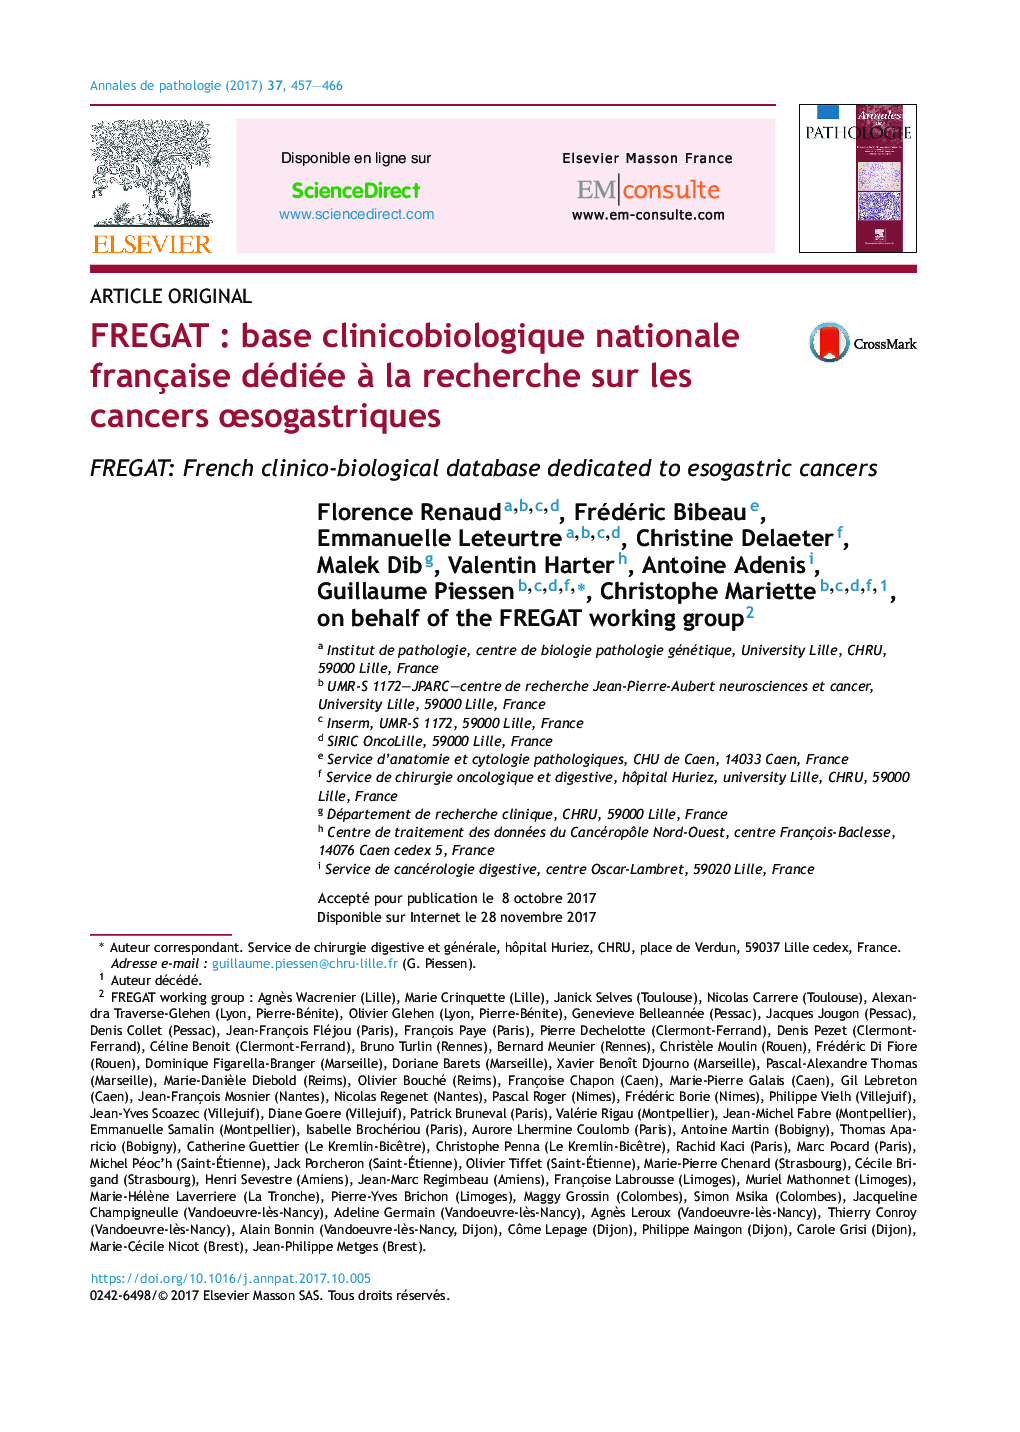 FREGATÂ : base clinicobiologique nationale française dédiée Ã  la recherche sur les cancers Åsogastriques